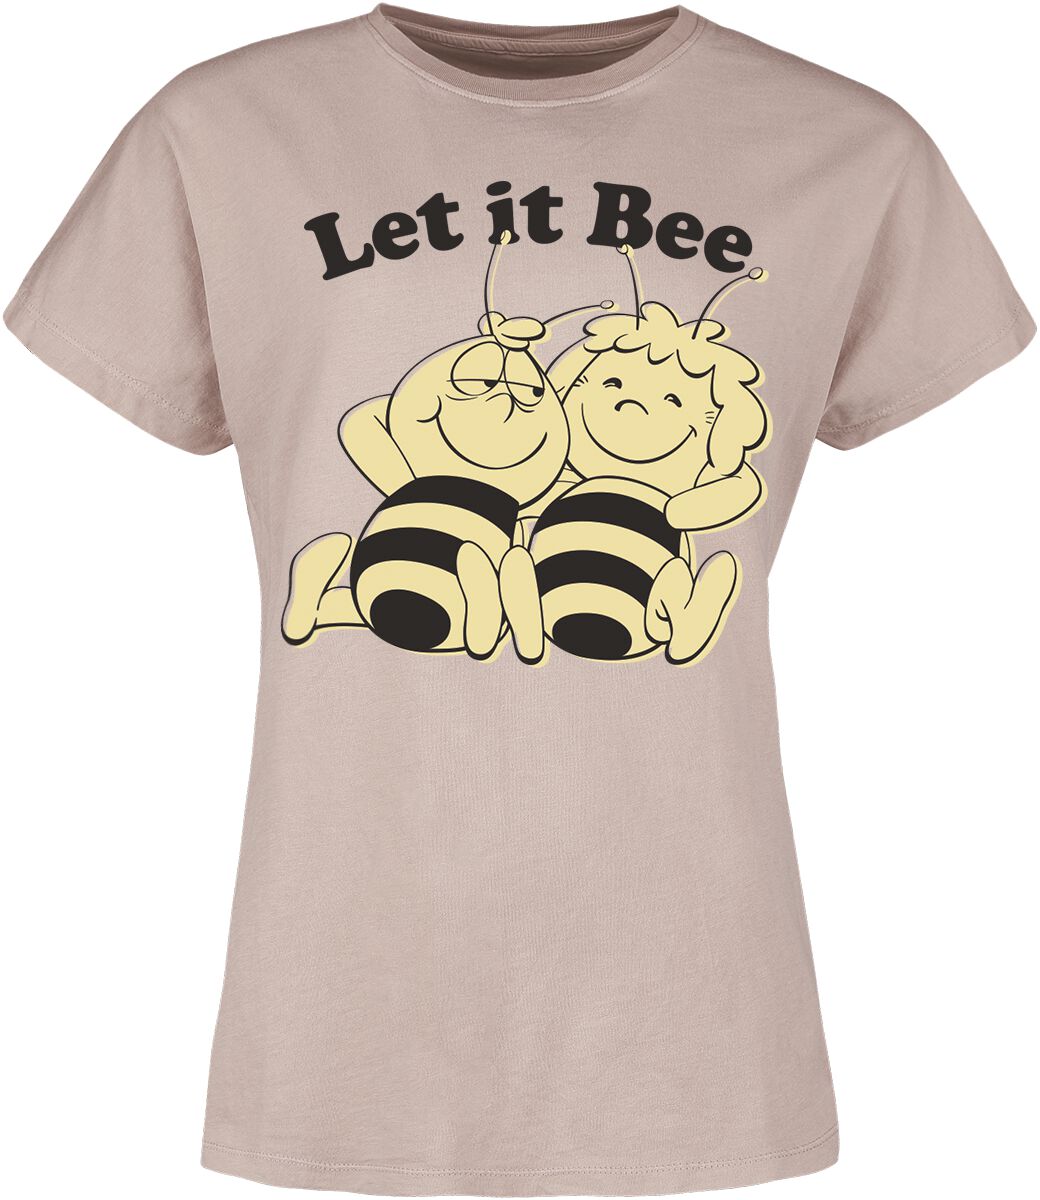 T-Shirt Manches courtes de Maya l'abeille - Let It Bee - S à 3XL - pour Femme - vieux rose